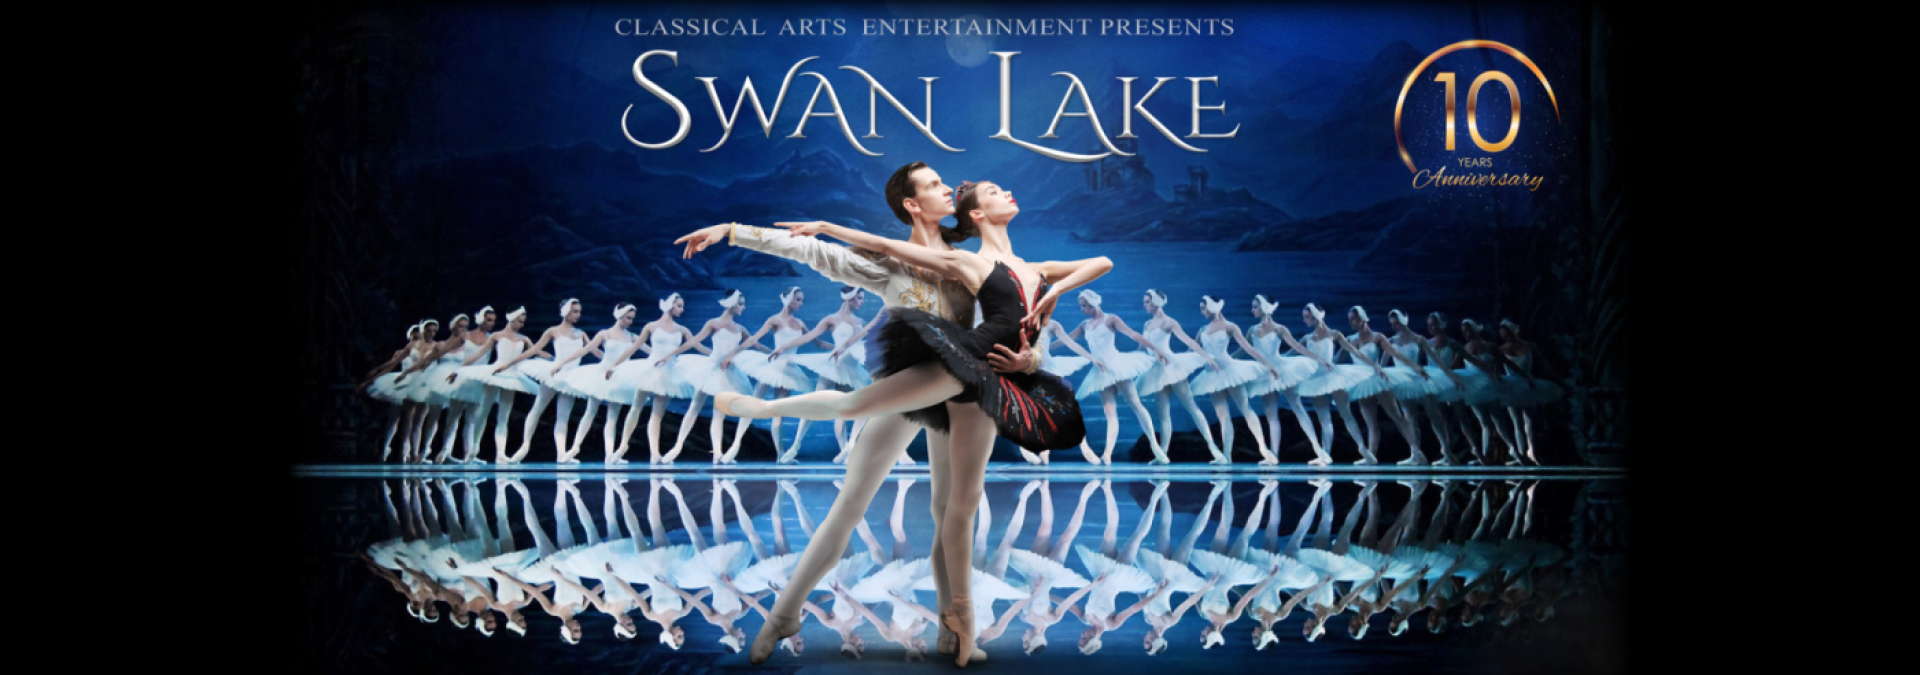 Swan Lake Website banner v2